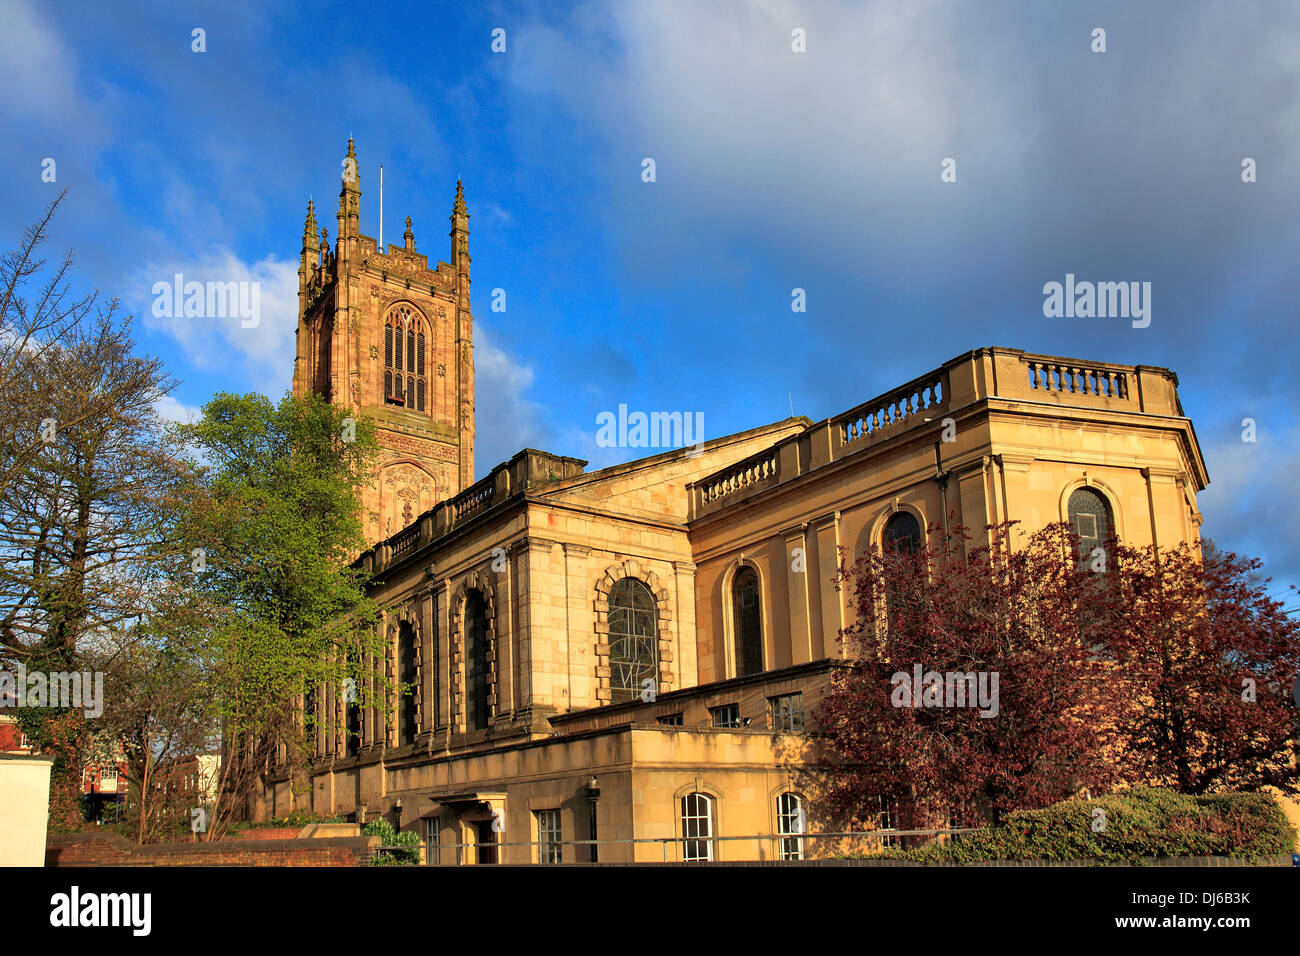 Vue de la cathédrale de Derby printemps Eglise de tous les saints dans le quartier de la cathédrale, le centre-ville de Derby, Derbyshire, Angleterre, RU Banque D'Images